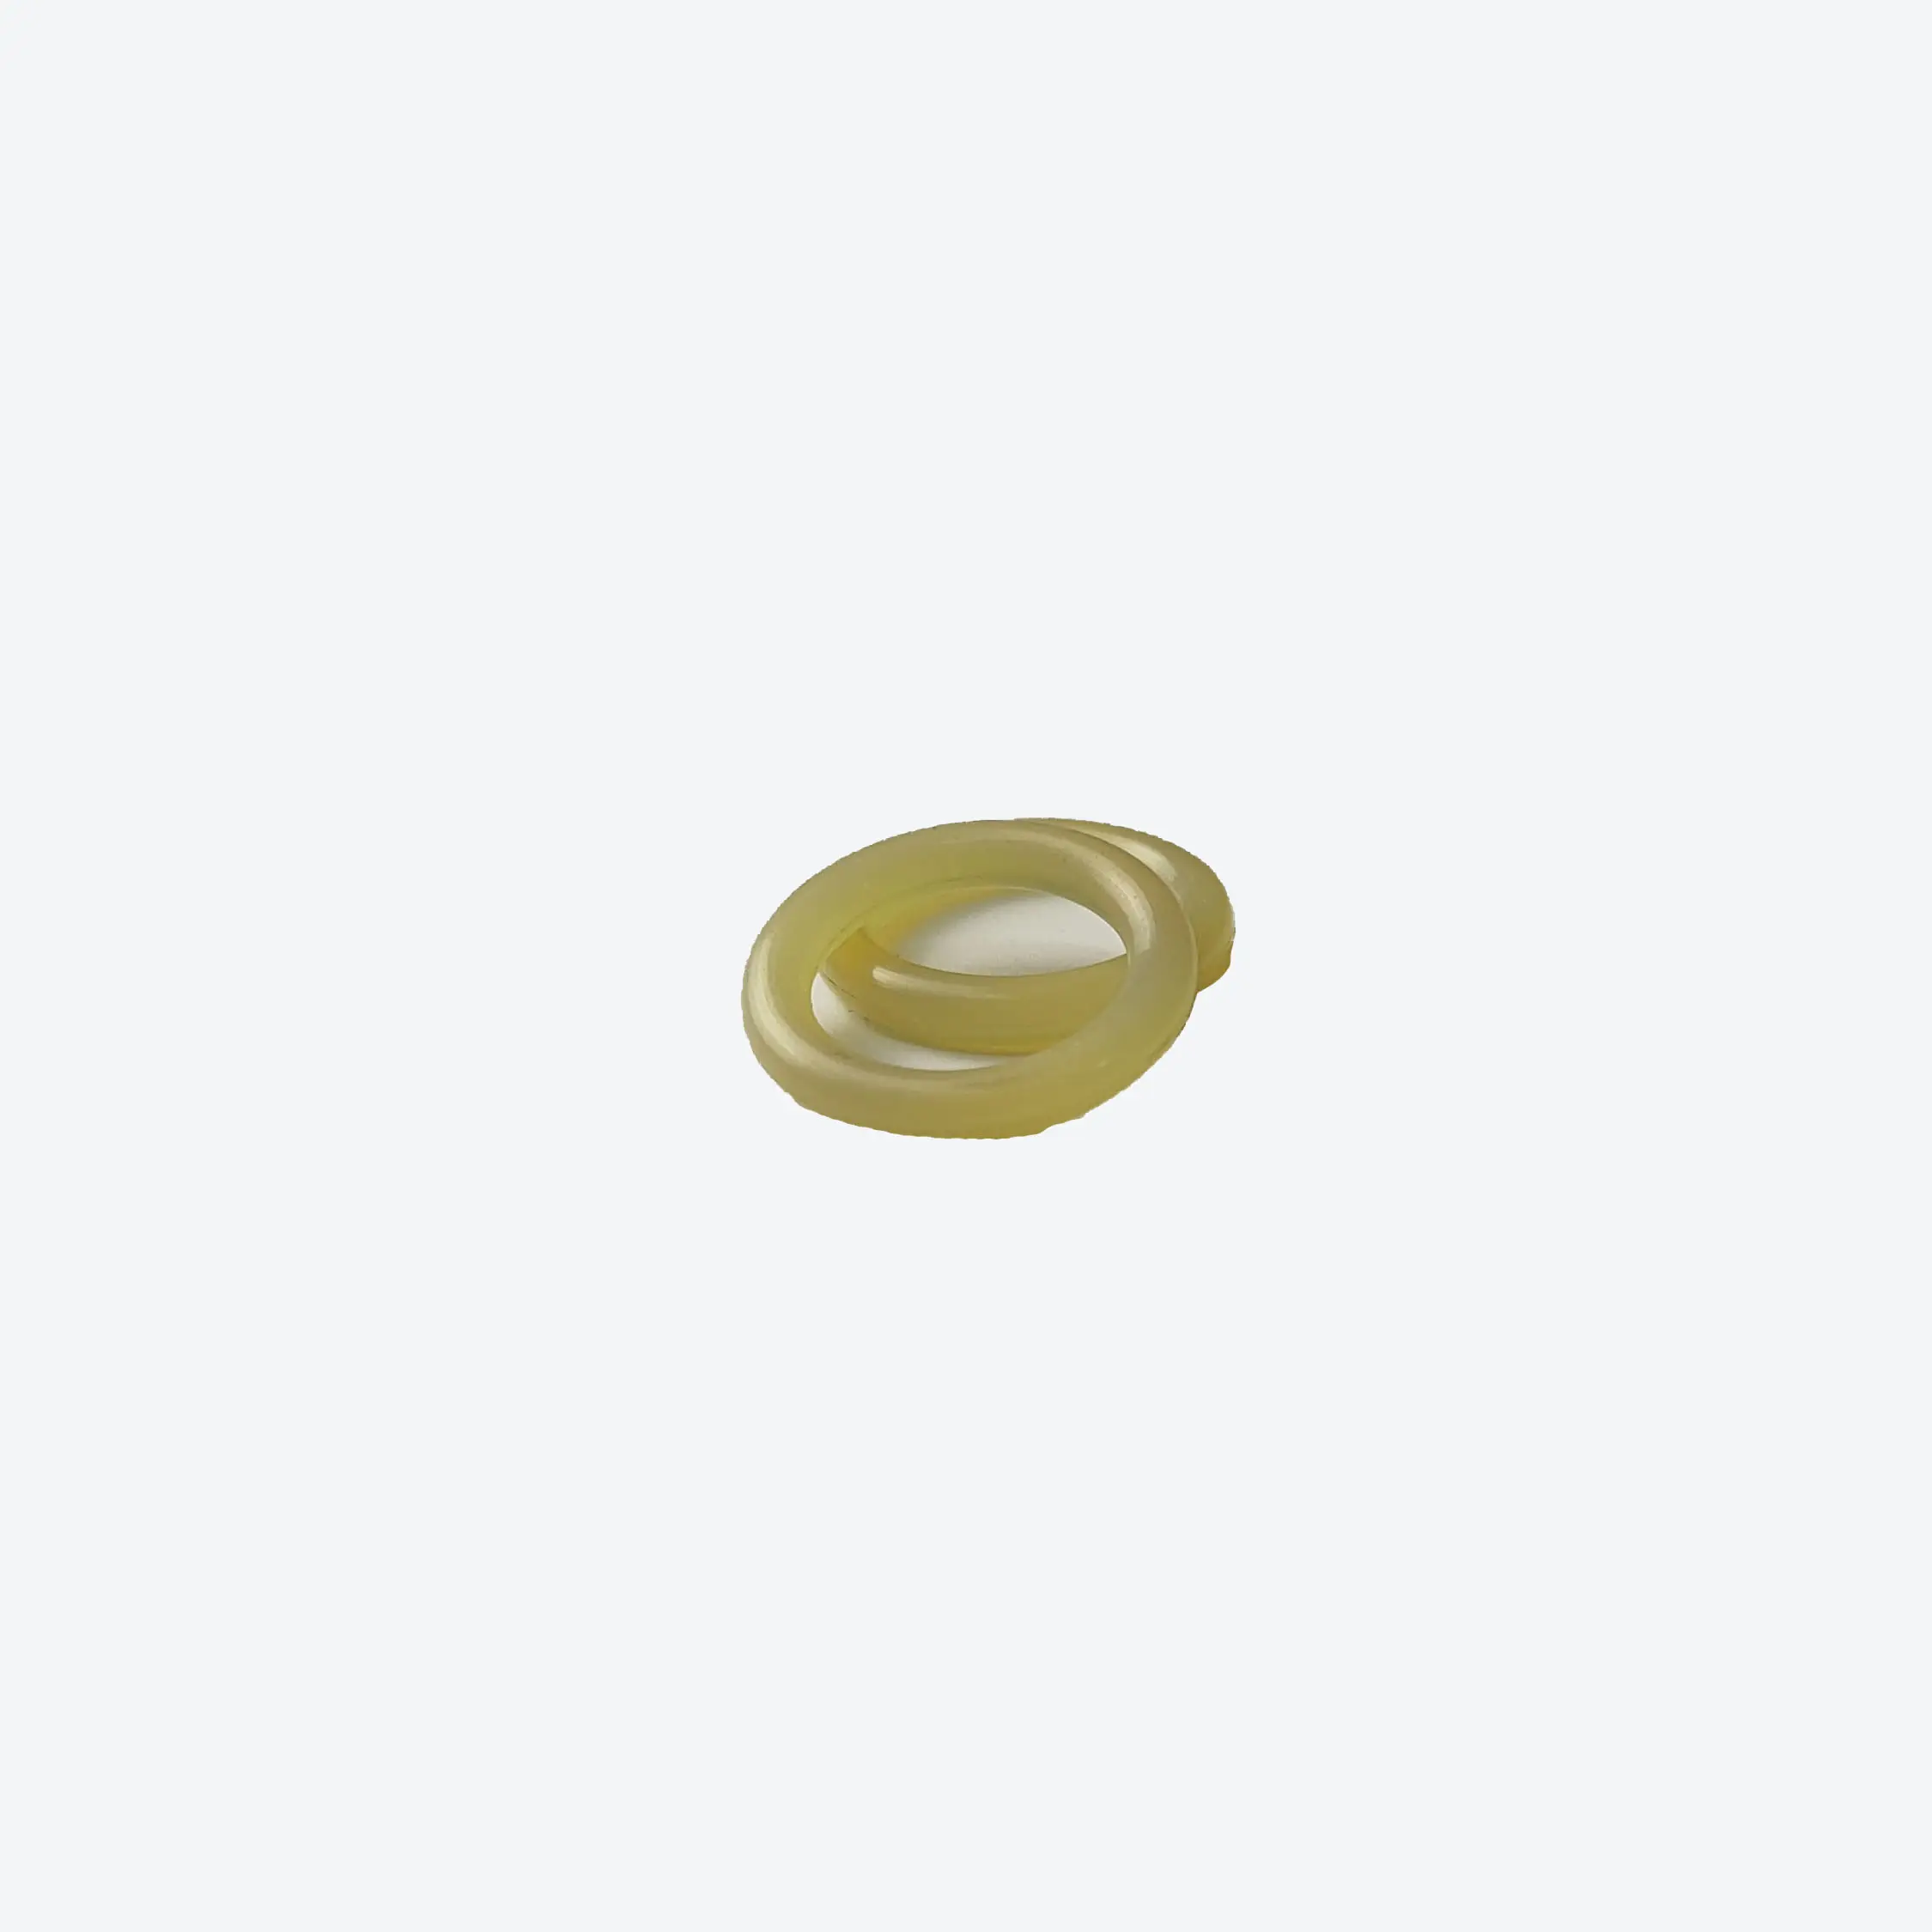 419 o ring set419 авто машина резиновые уплотнительные кольца комплект Высокое качество резиновое уплотнительное кольцо